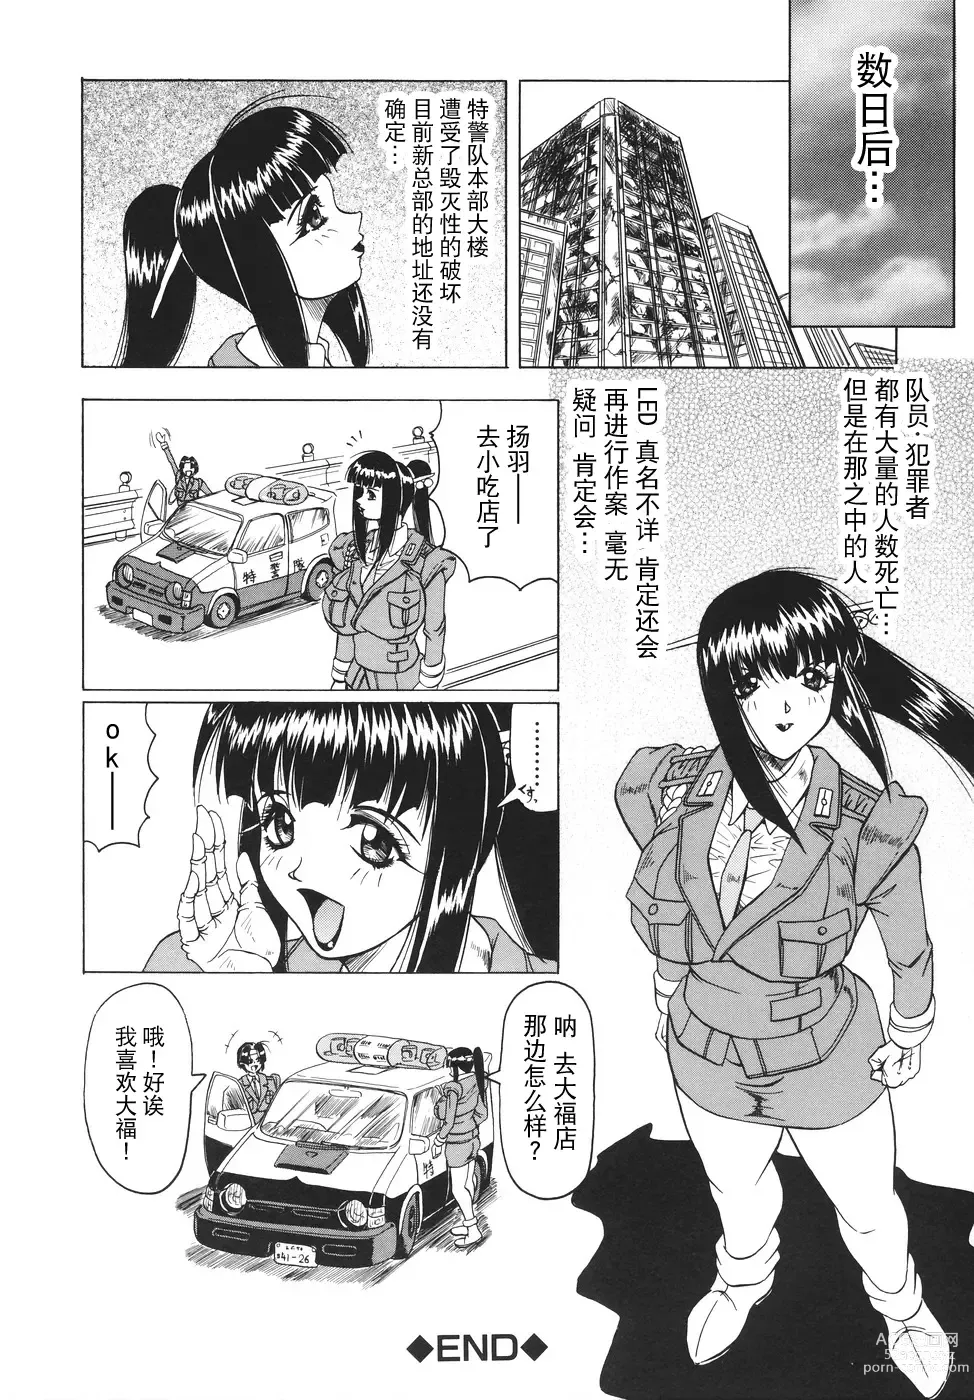 Page 169 of manga Kamyla